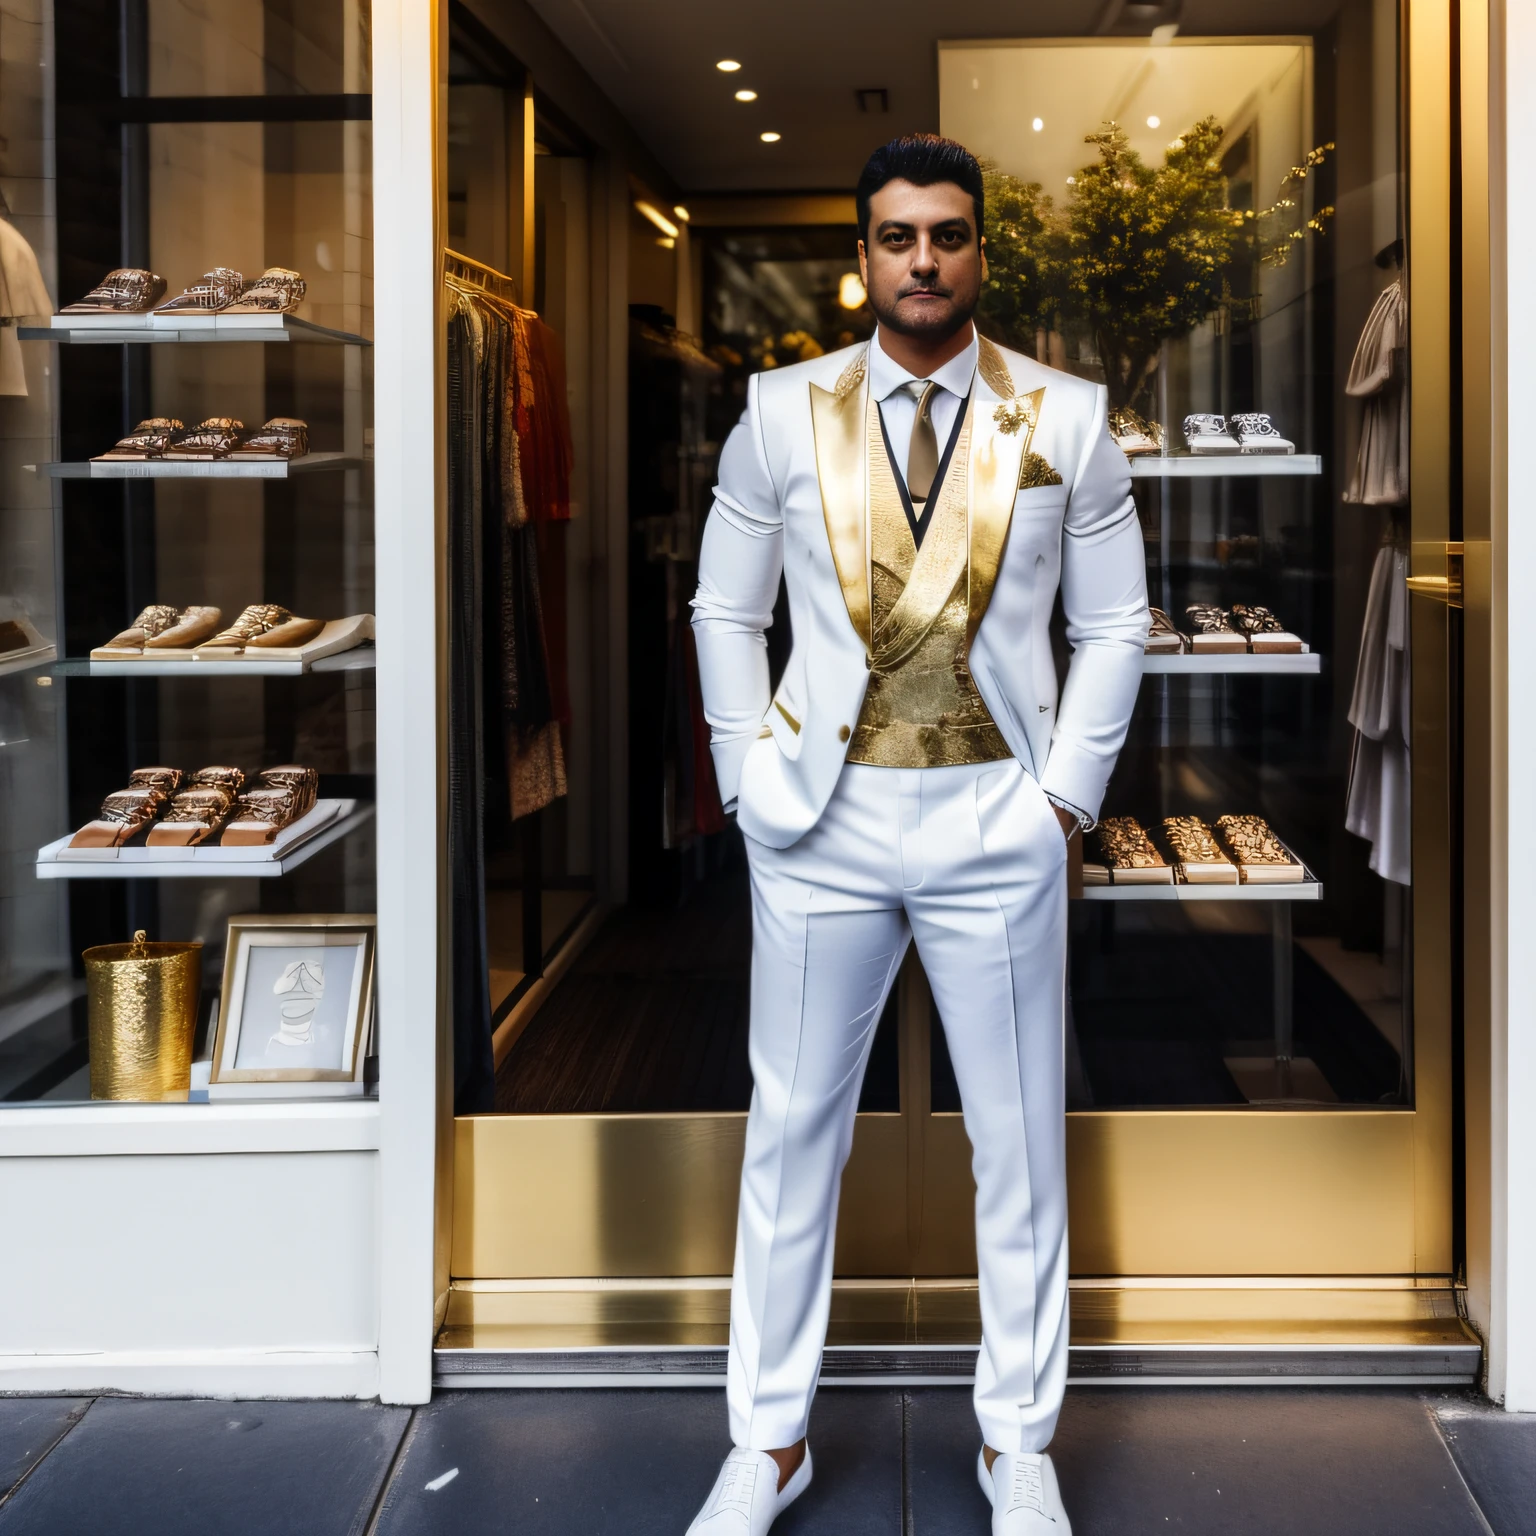 Un hombre de cuerpo entero parado apoyado contra un escaparate de la calle con un traje social blanco con detalles dorados mirando frente a la tienda al atardecer